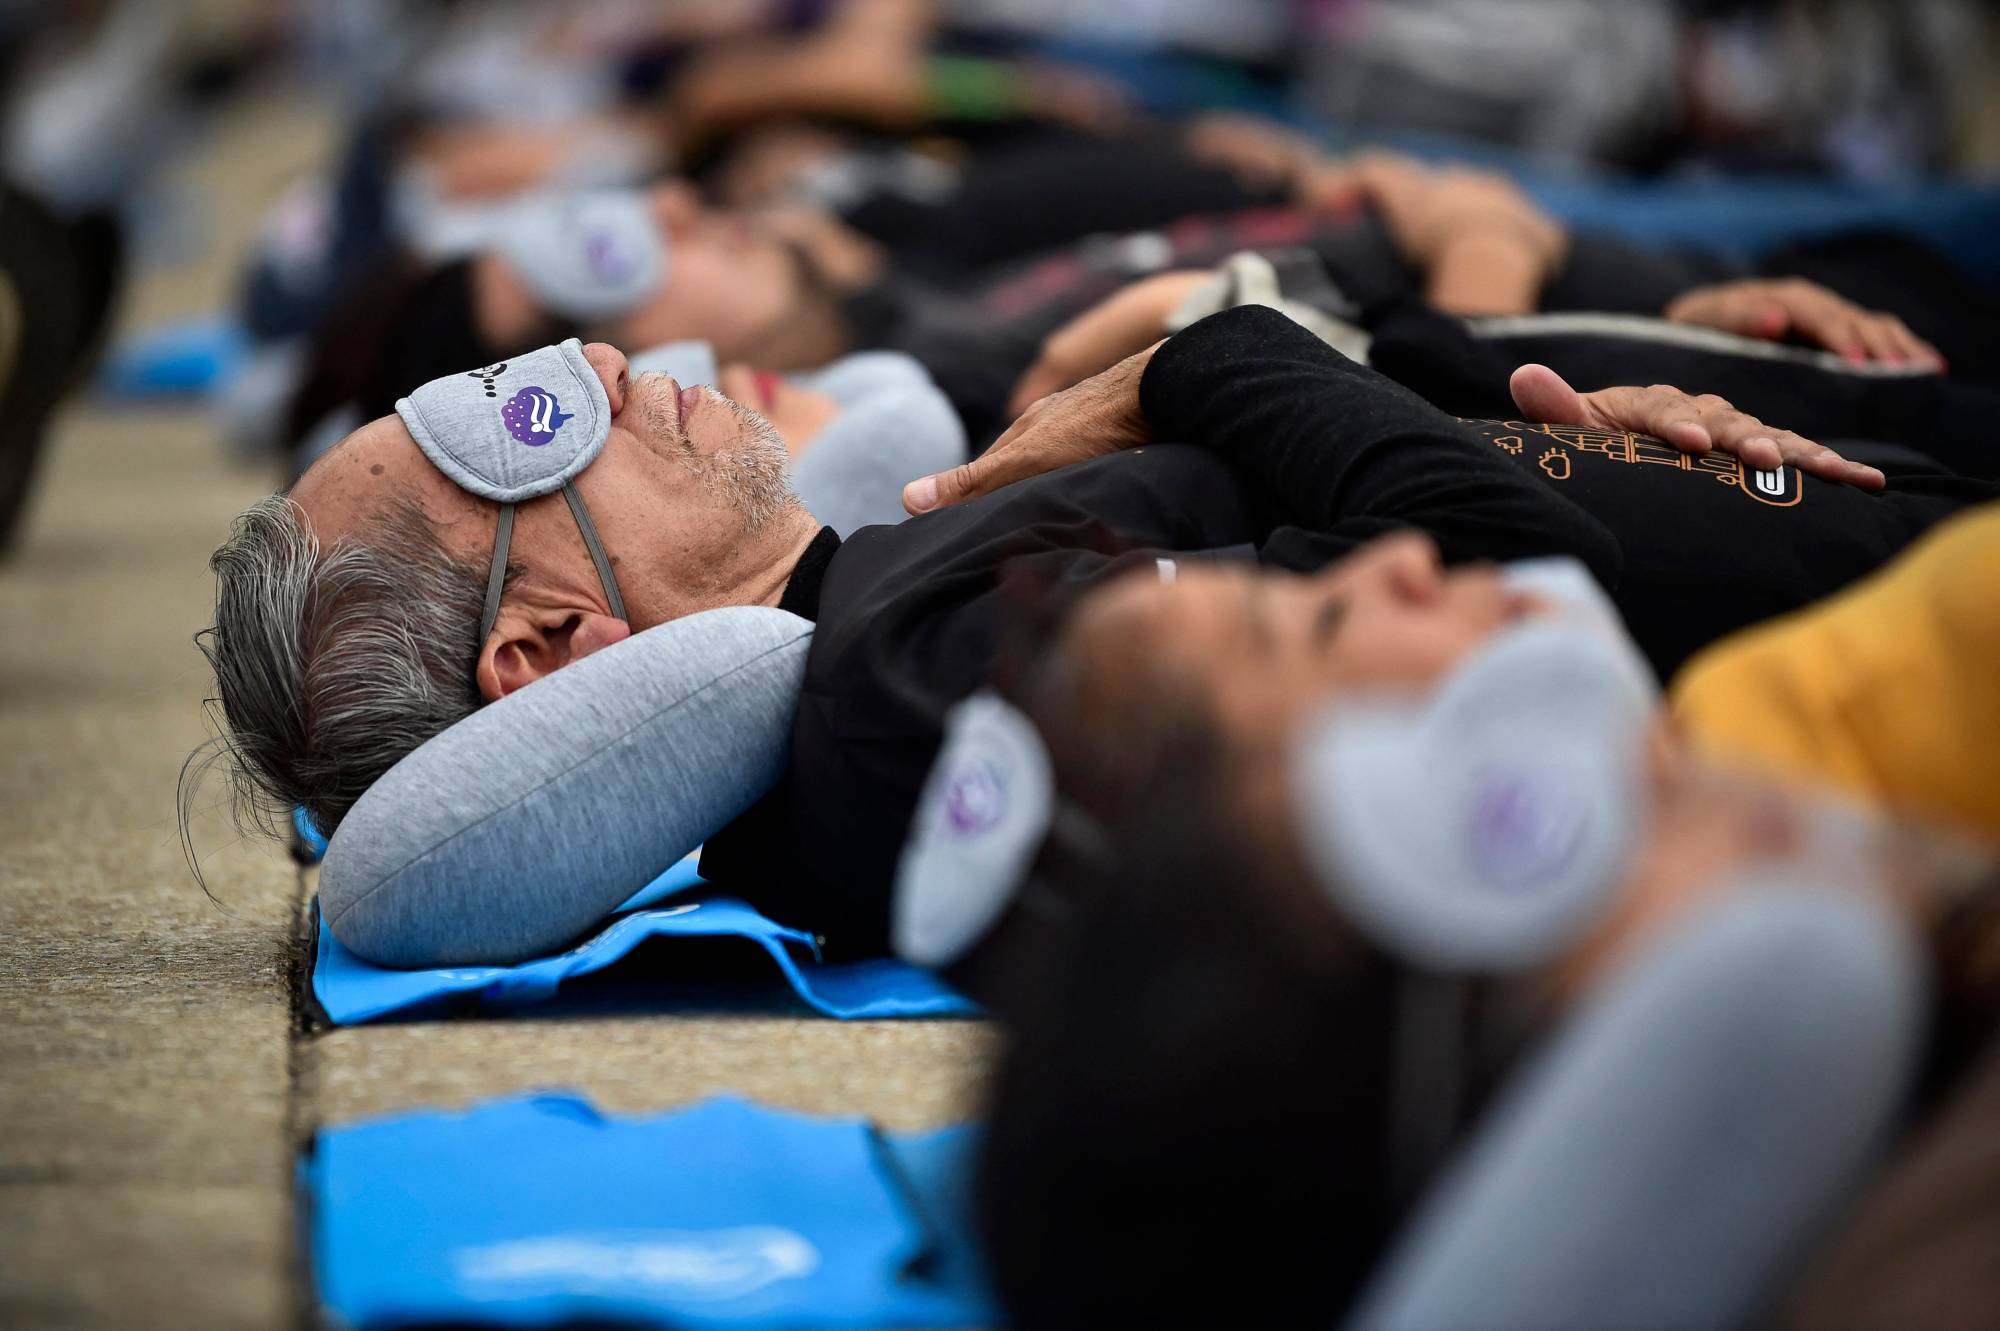 مشاركون يستمتعون بقيلولة أثناء حضورهم حدث يوم النوم العالمي في مكسيكو سيتي (أ.ف.ب)